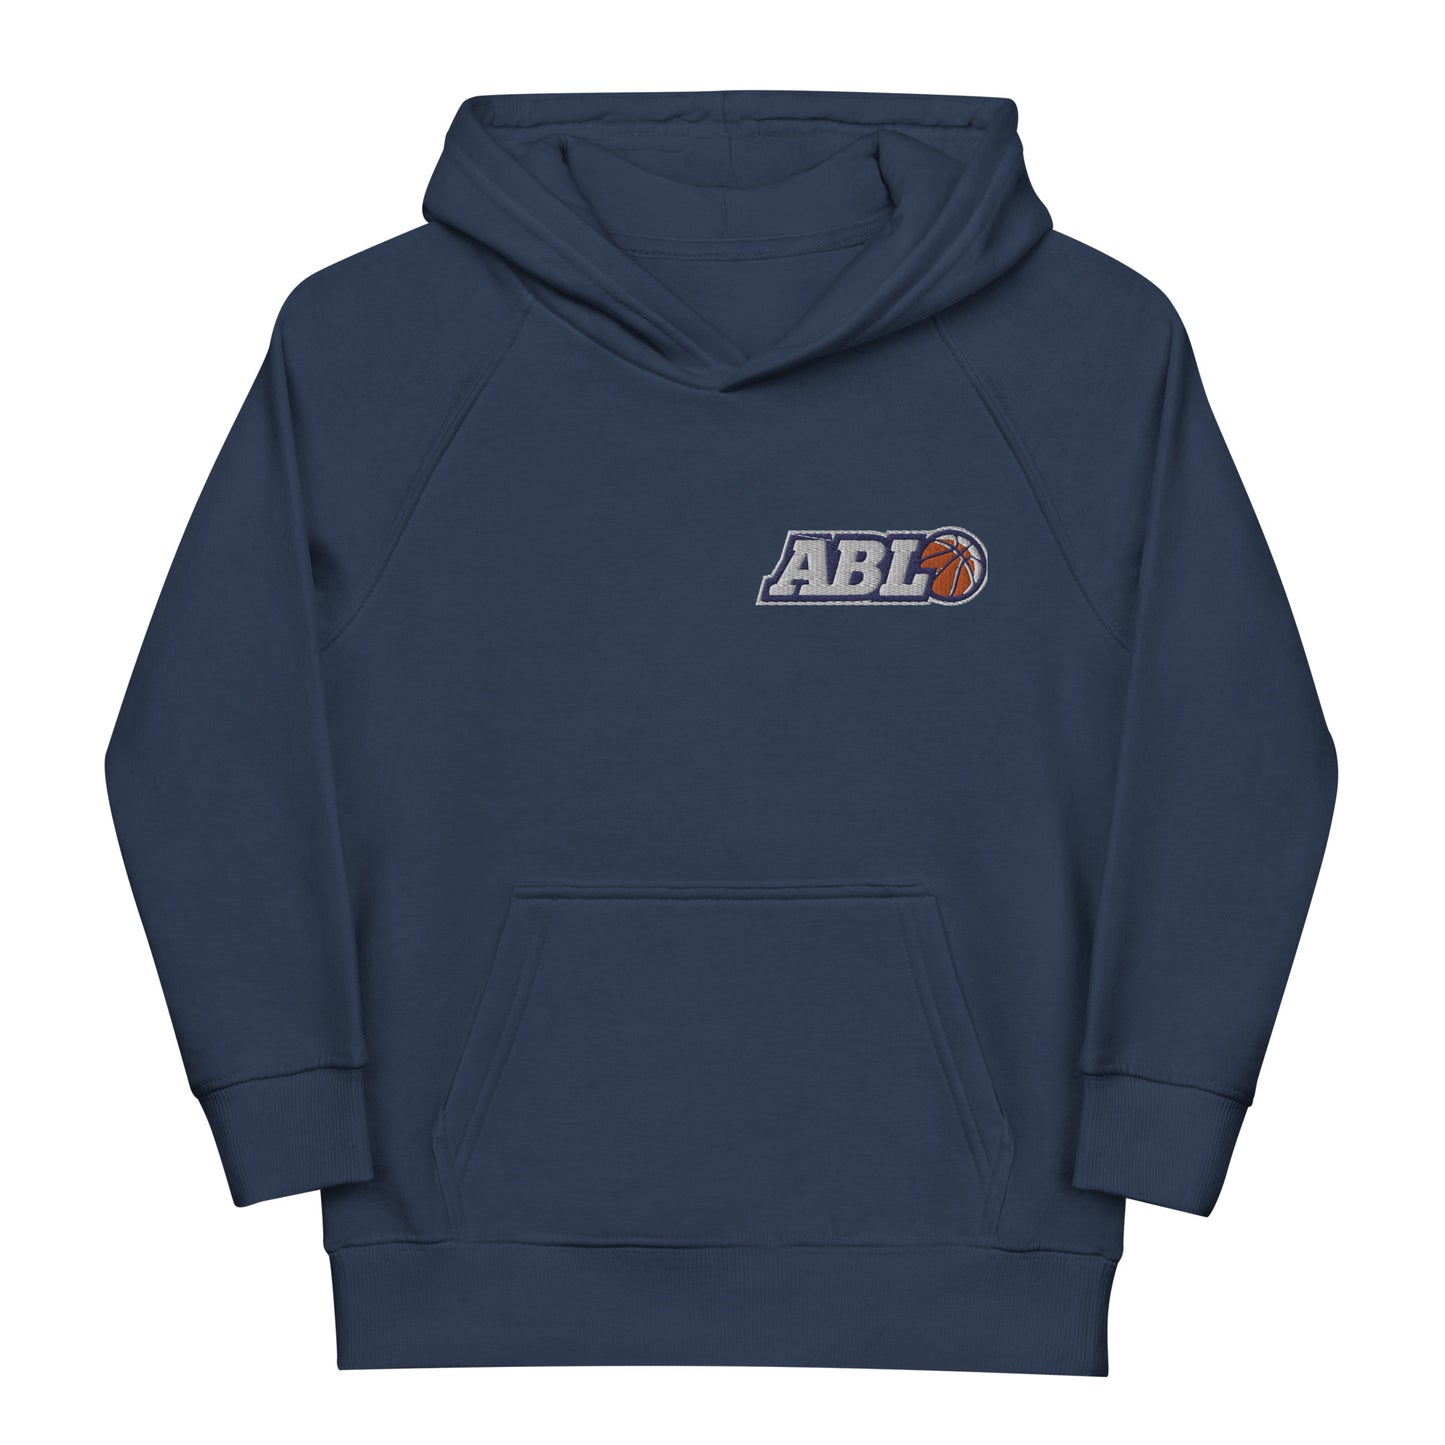 ABL Kids eco hoodie